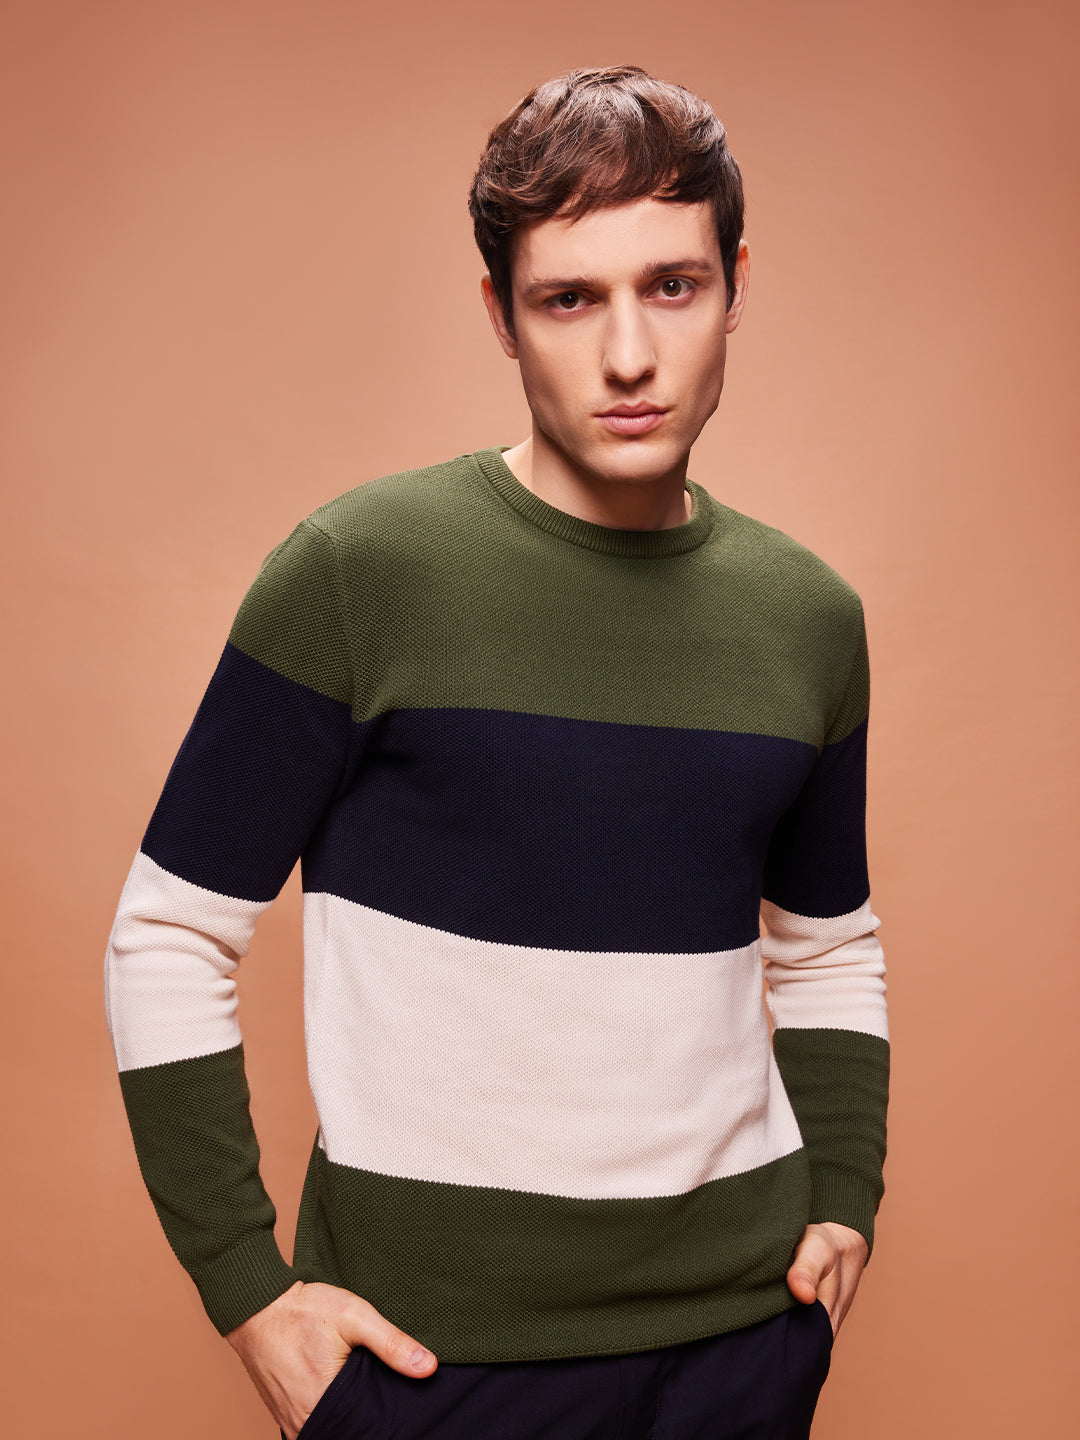 Bombay High Men's Premium Cotton Multicolored Knit Pullover